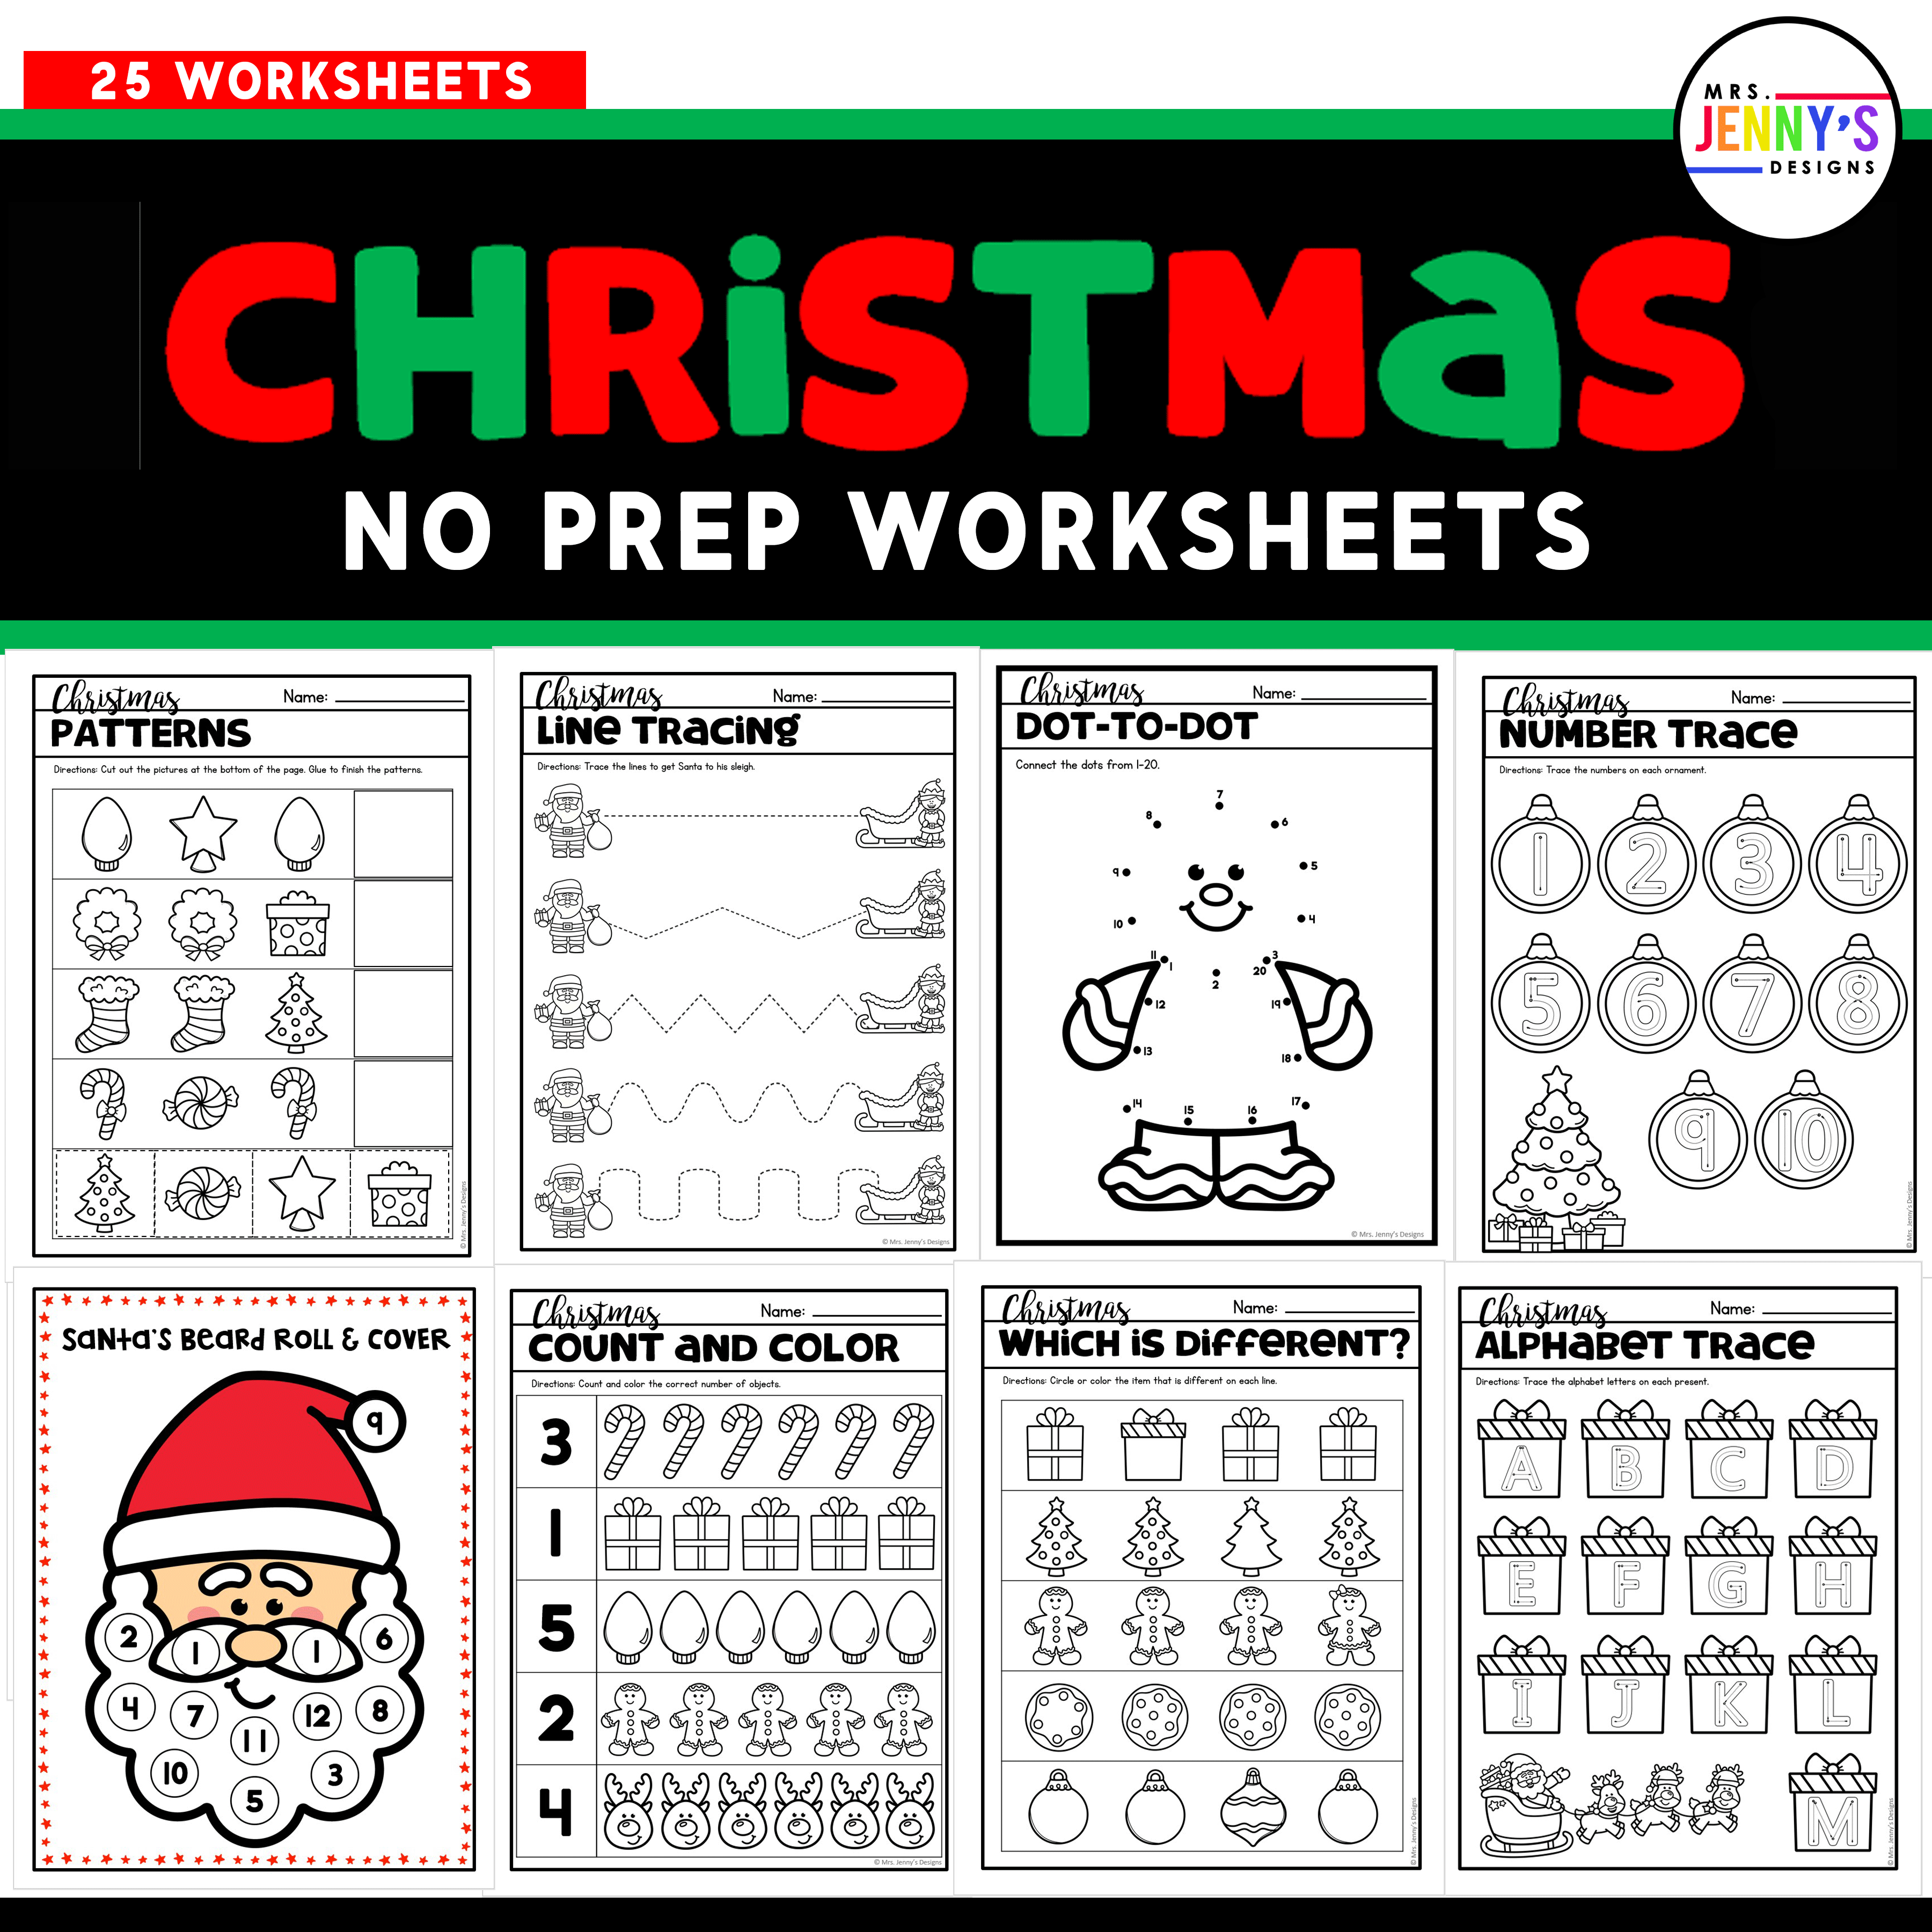 25 Christmas No Prep Worksheets & Activities for Preschool and Kindergarten